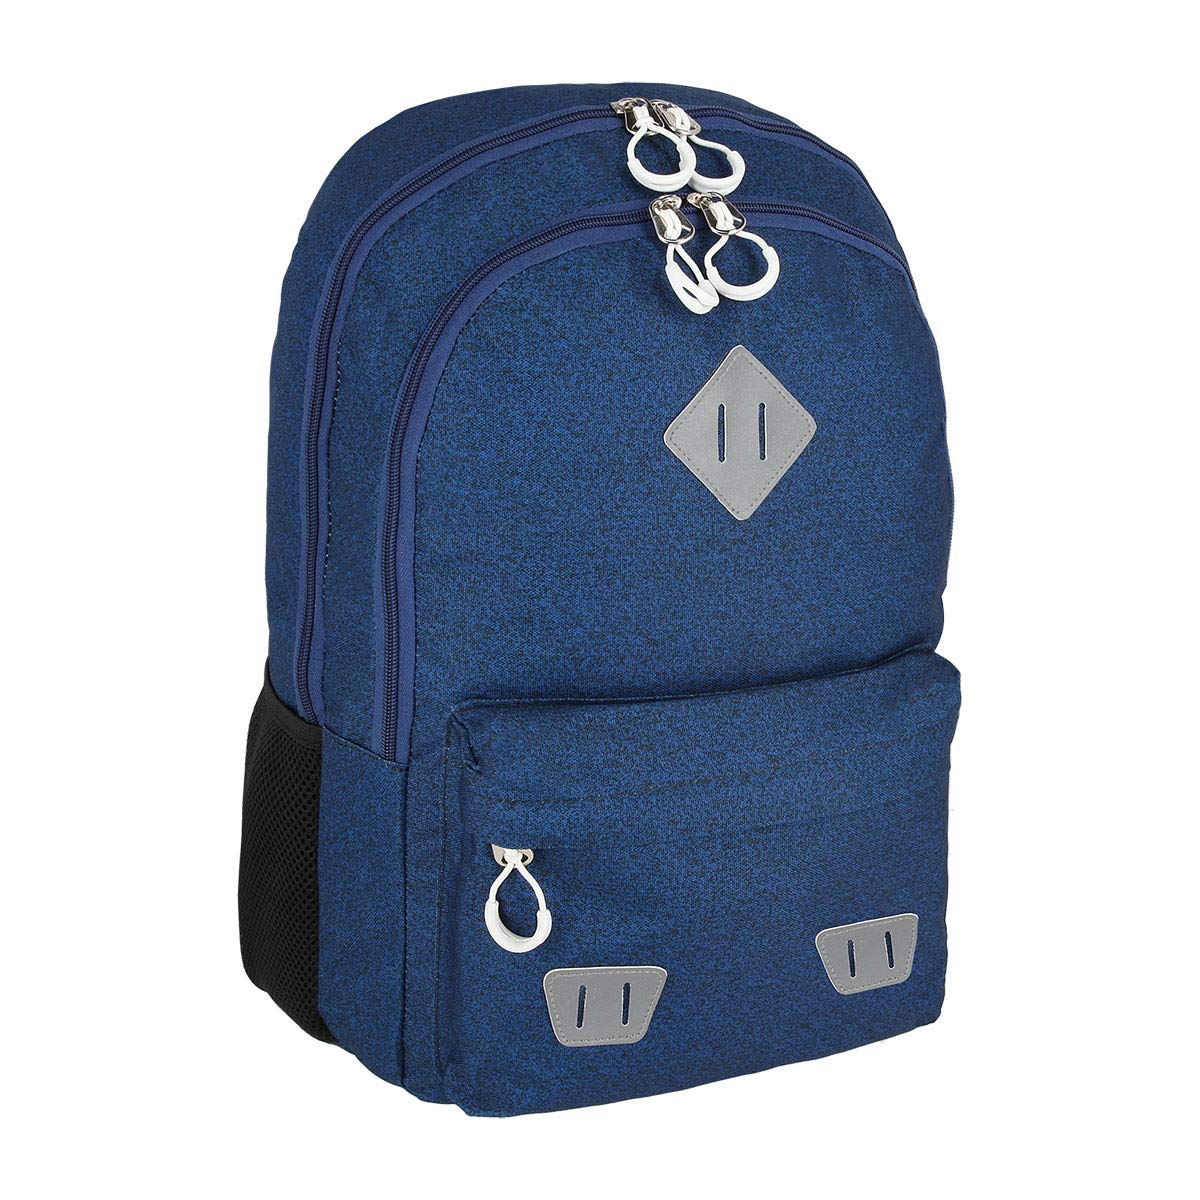 SPIRIT Rucksack Schulrucksack Schoolbag Schultasche große Kapazität Reisetasche Jungen Mädchen "SHADE 01"